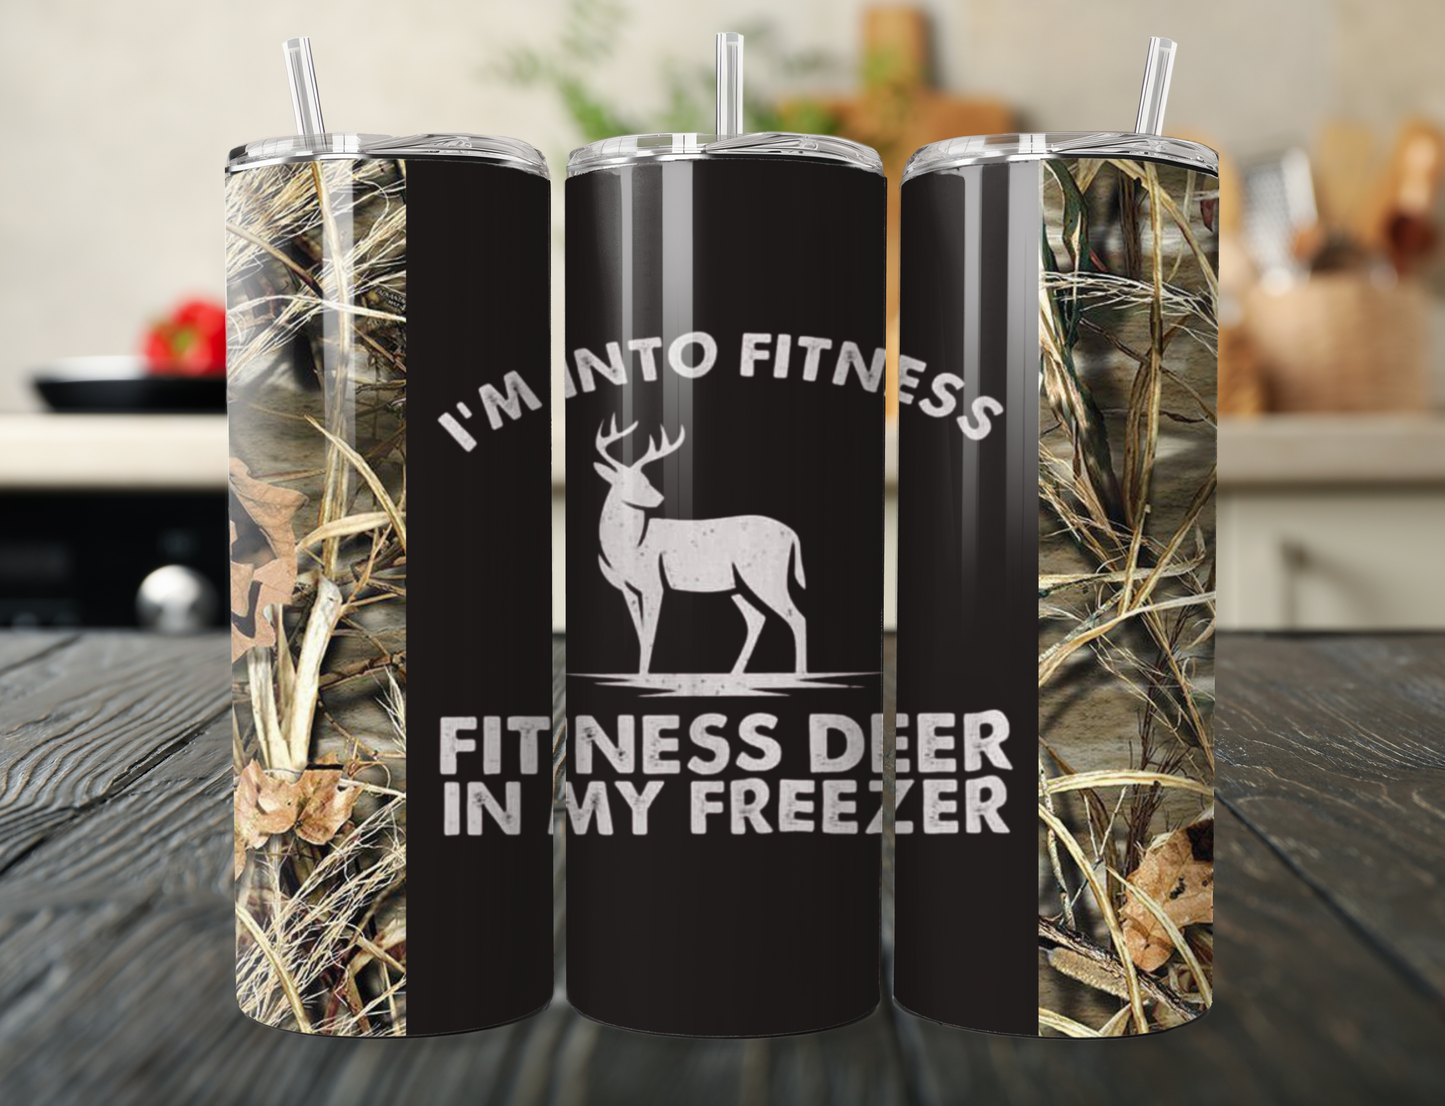 Fitness Deer